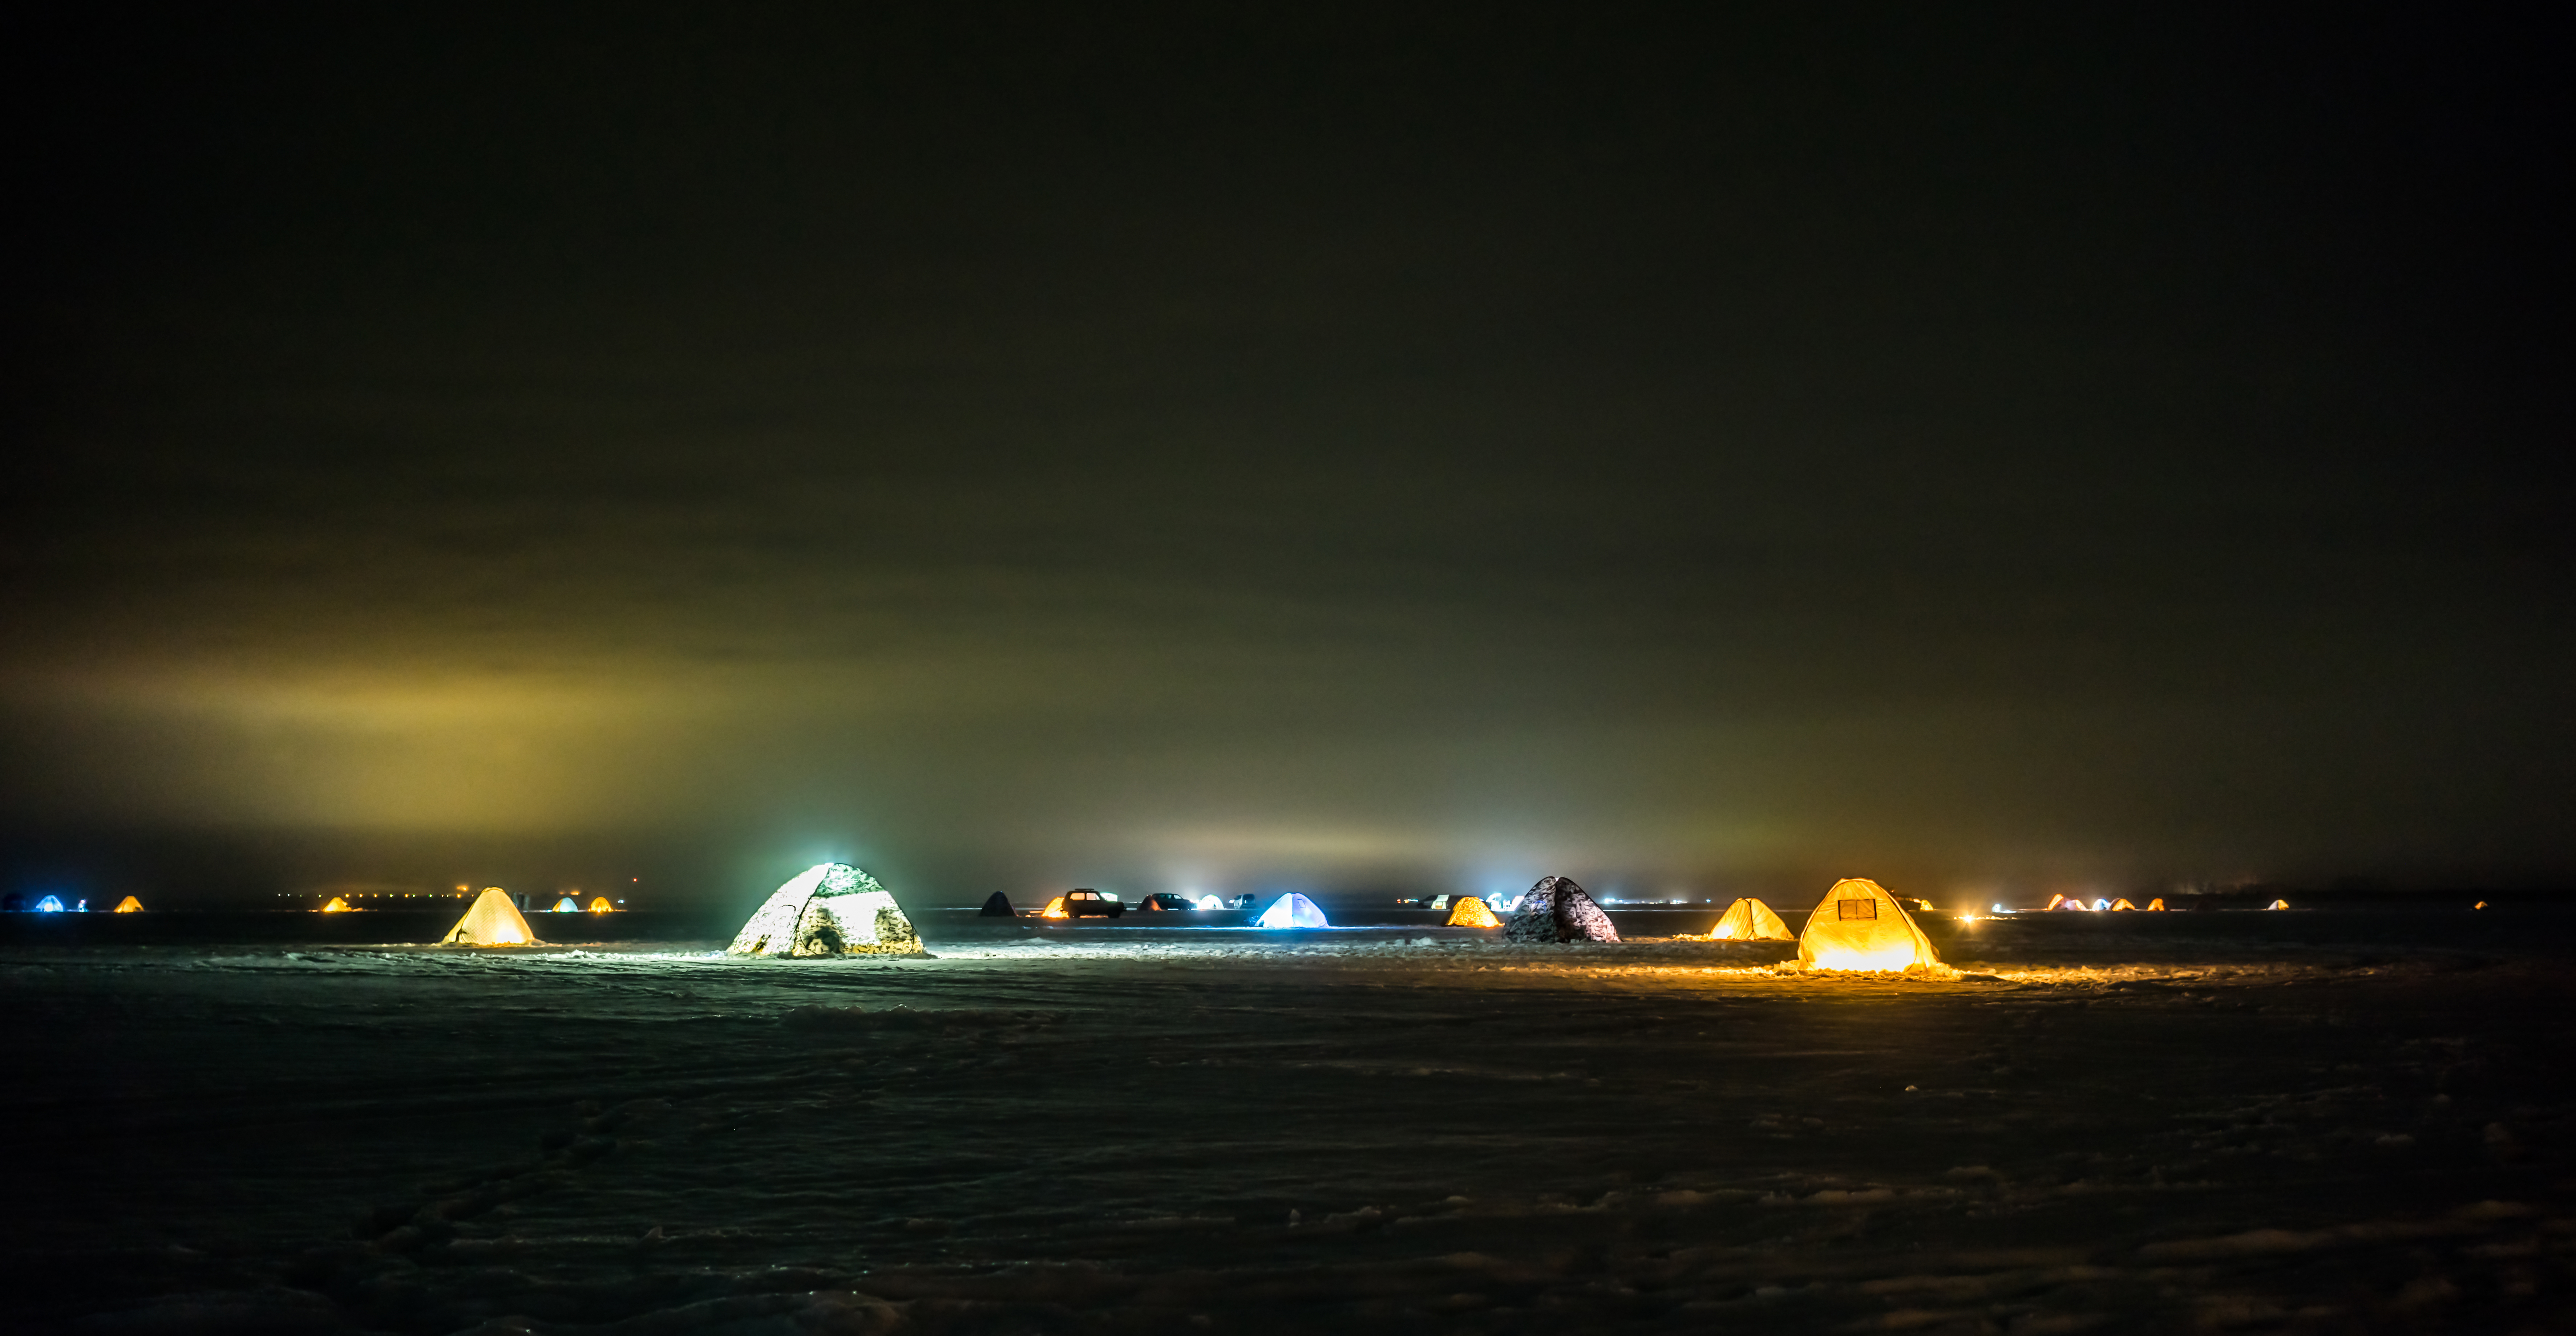 Illuminated ice fishing tents – © e-leet / Shutterstock